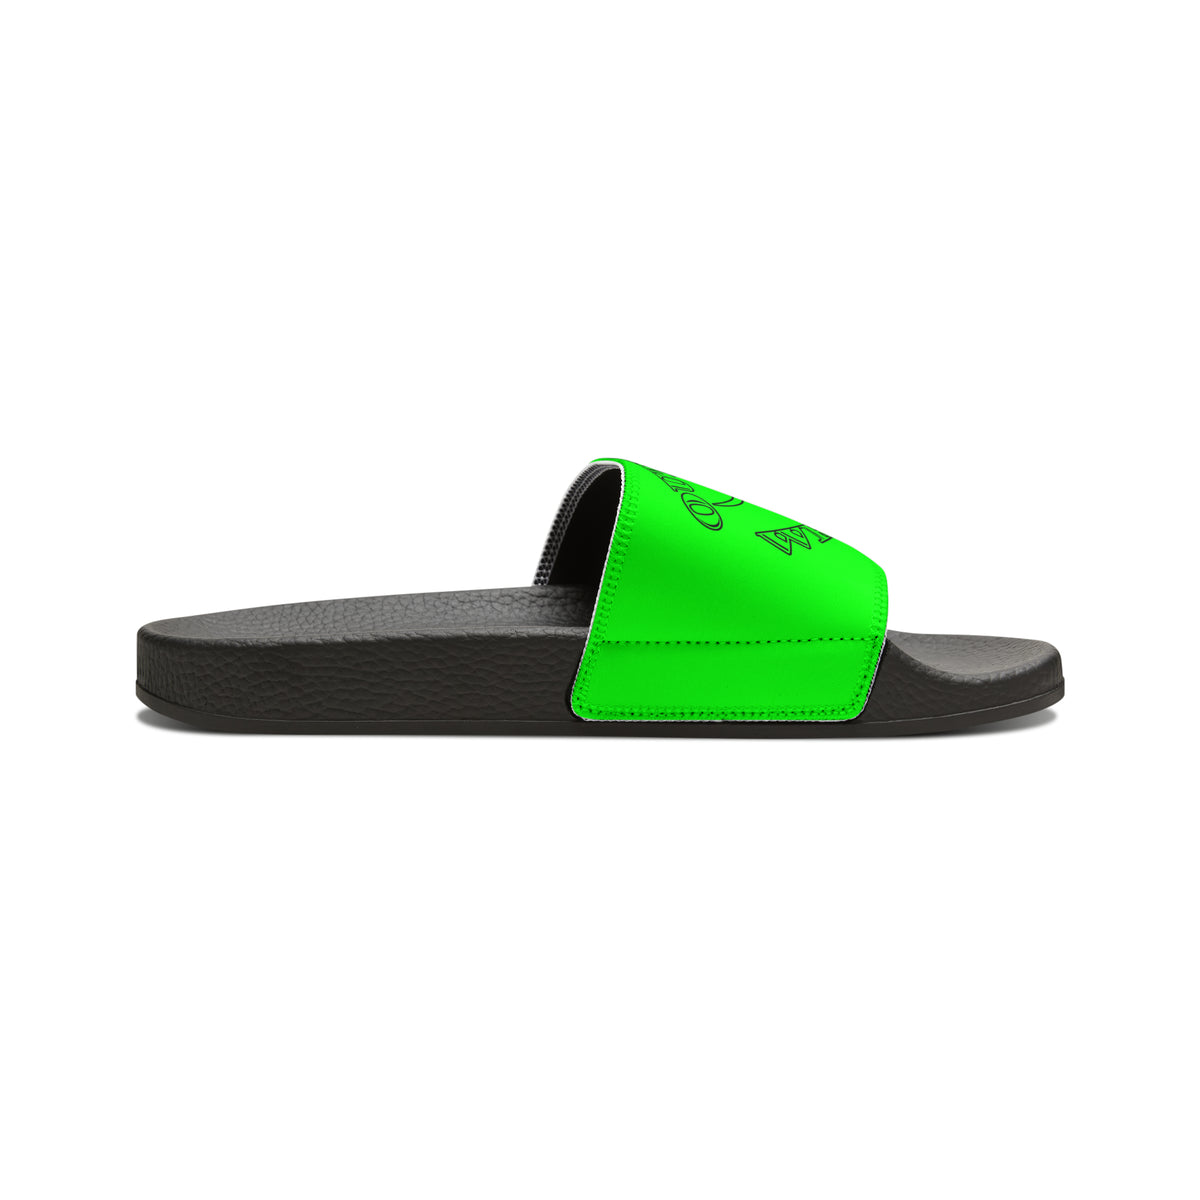 Green Outlaws Wrestling Slide Sandals